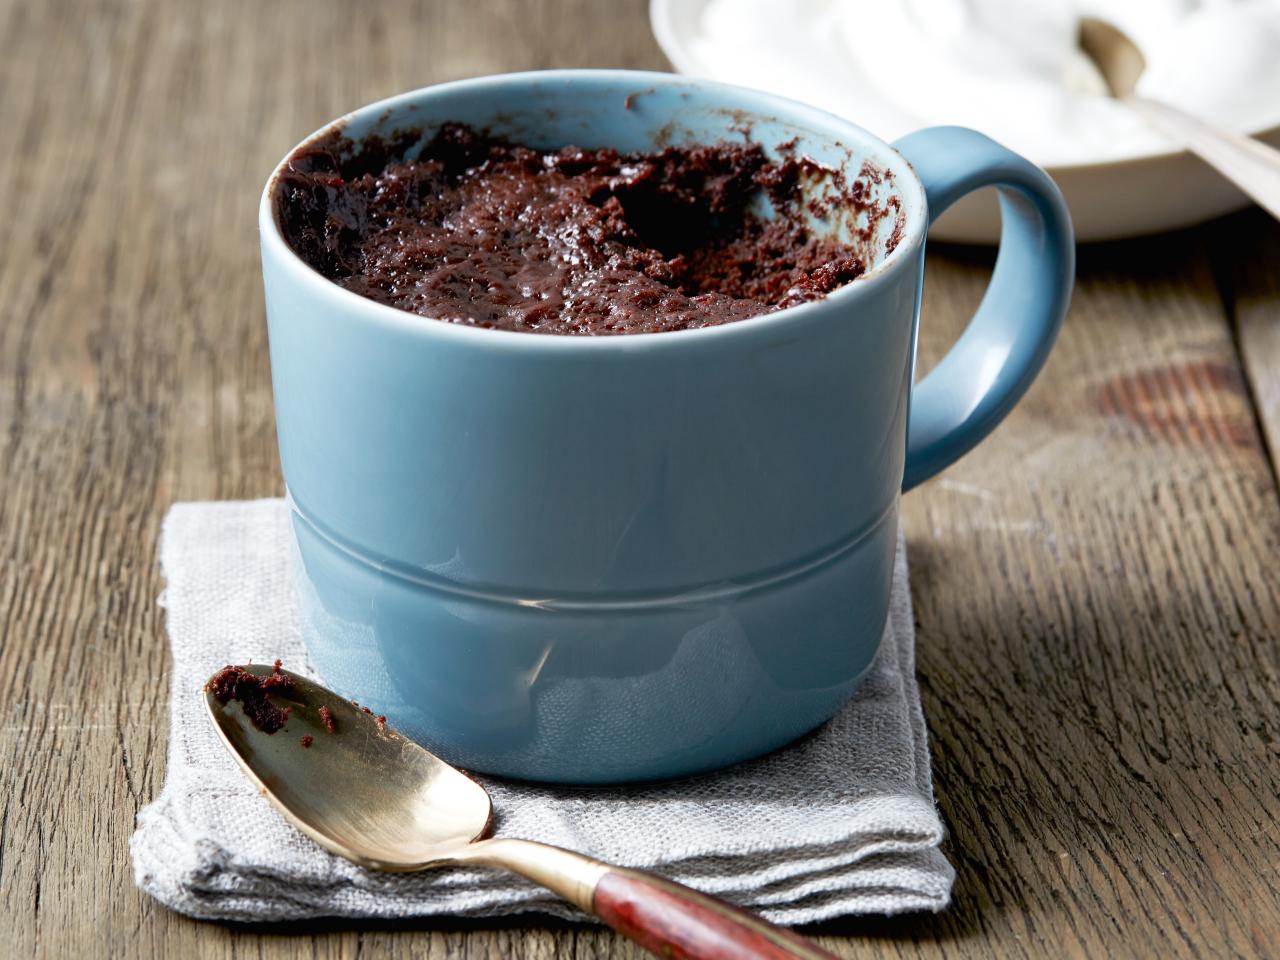 Microwave chocolate cake recipe - BBC Food